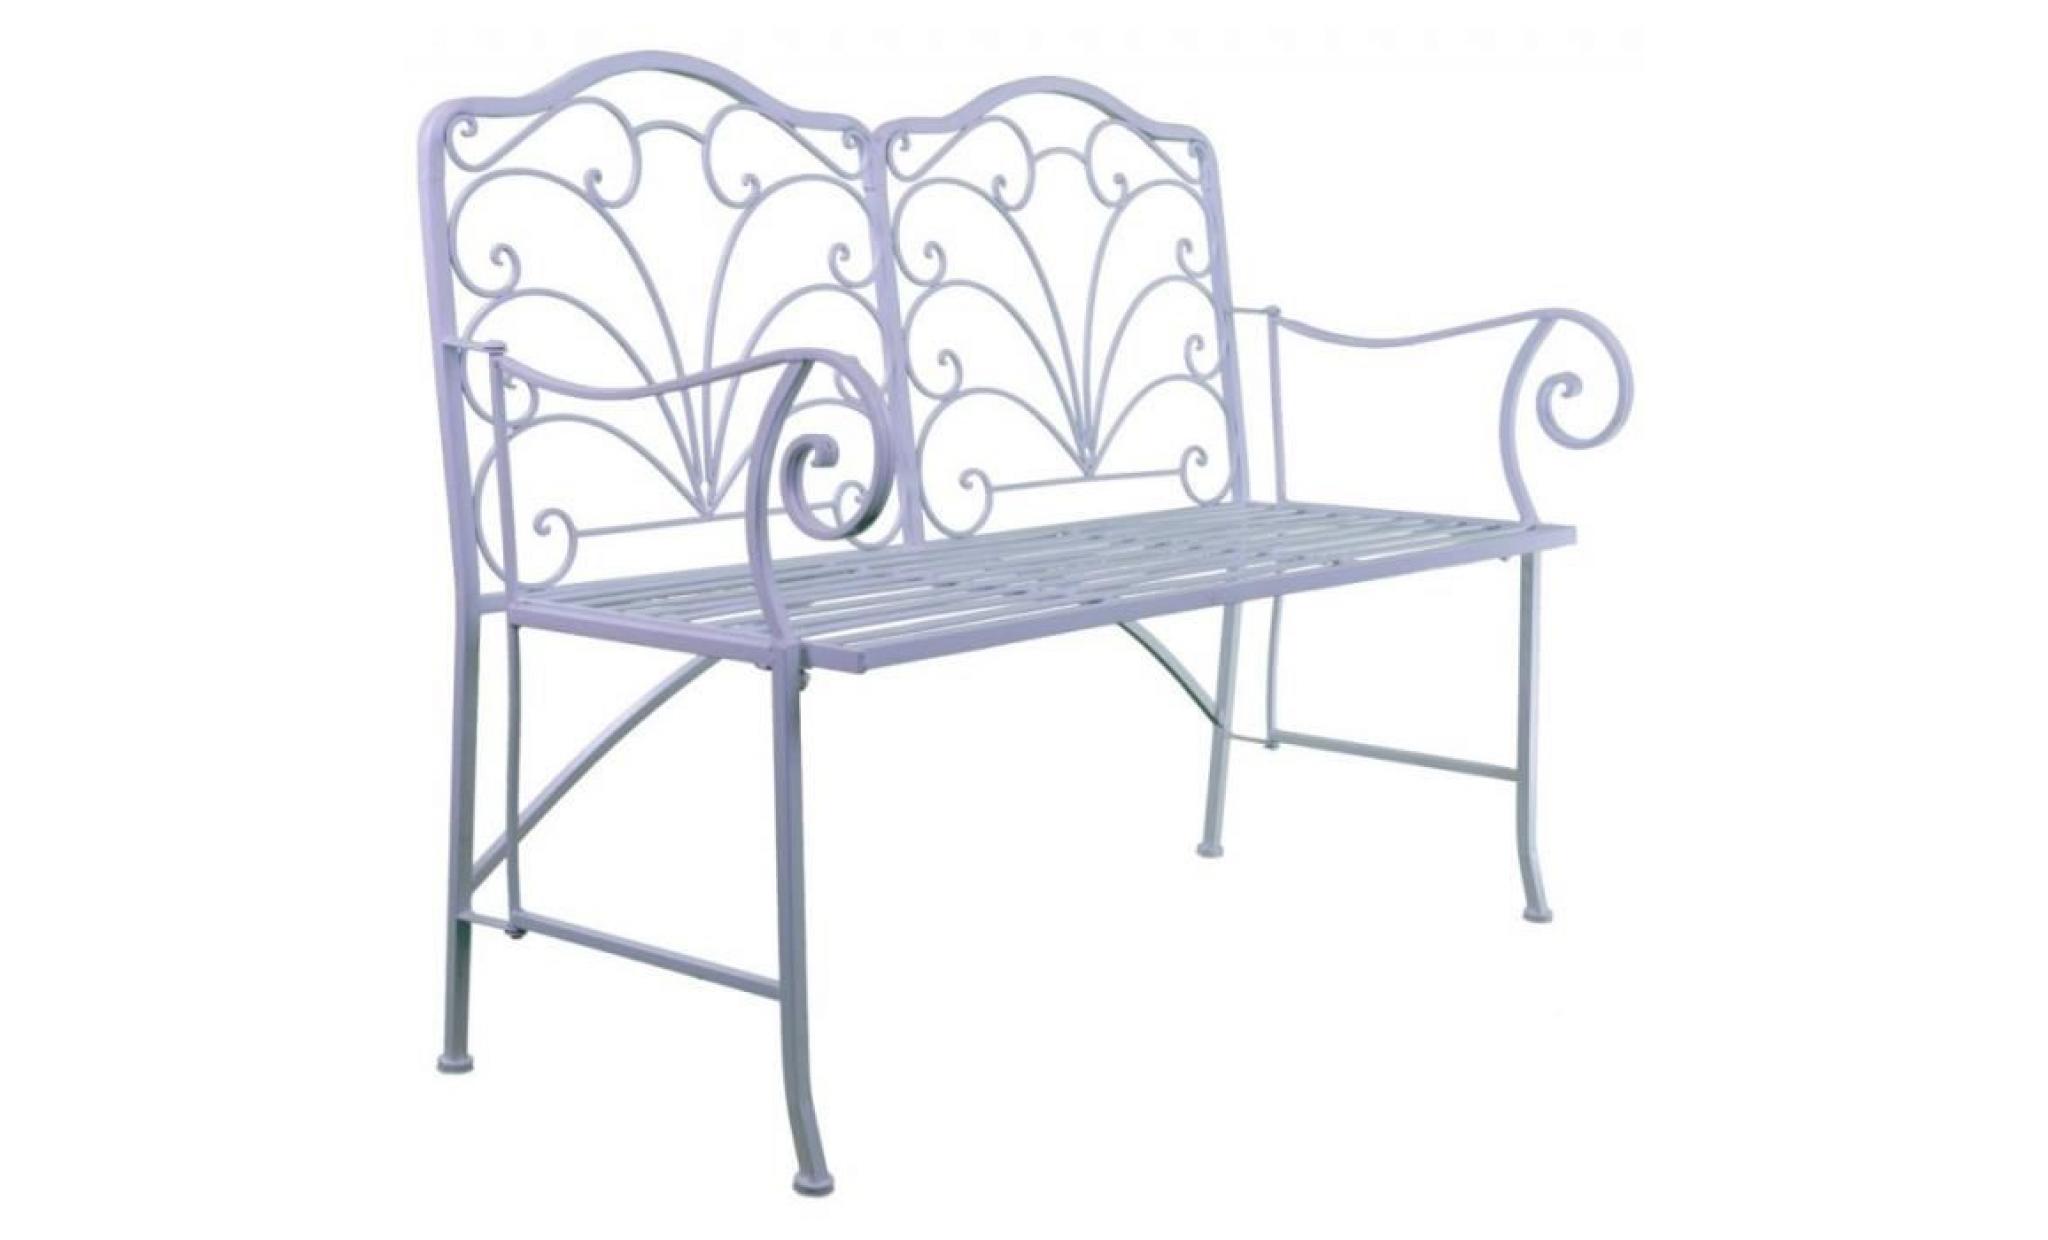 chaise double banc pliable banquette de jardin en fer blanc assise 2 places 52x92x111cm pas cher